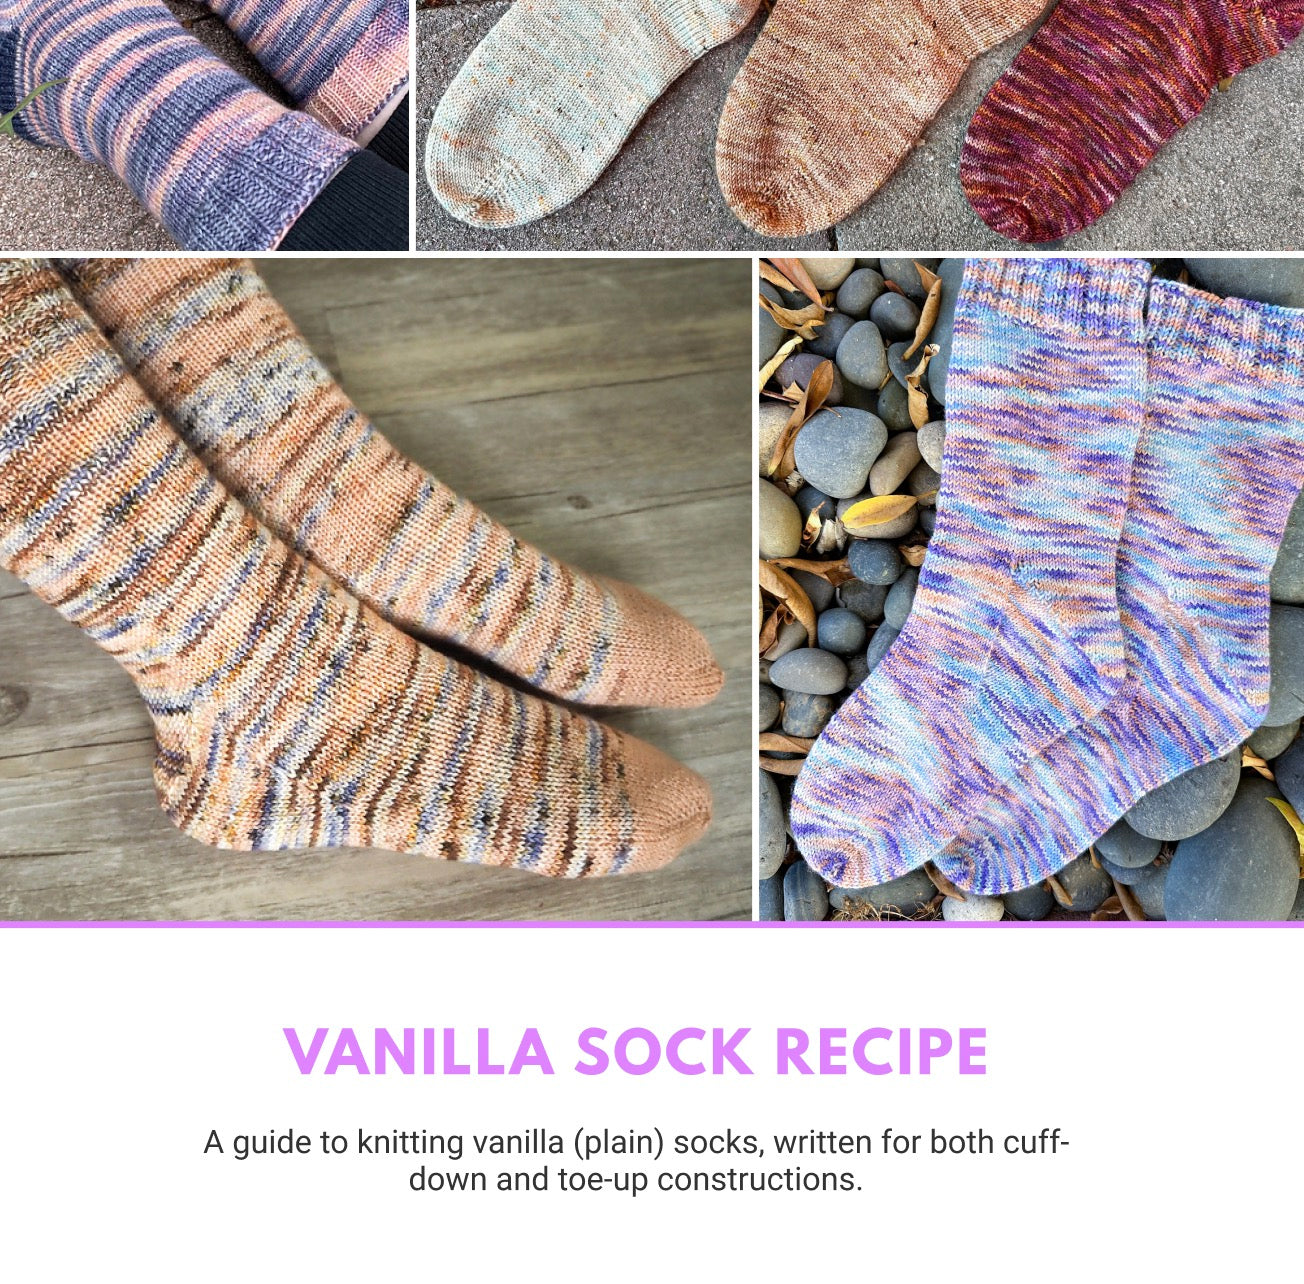 Vanilla Sundae Sock Set - The Complete eBook